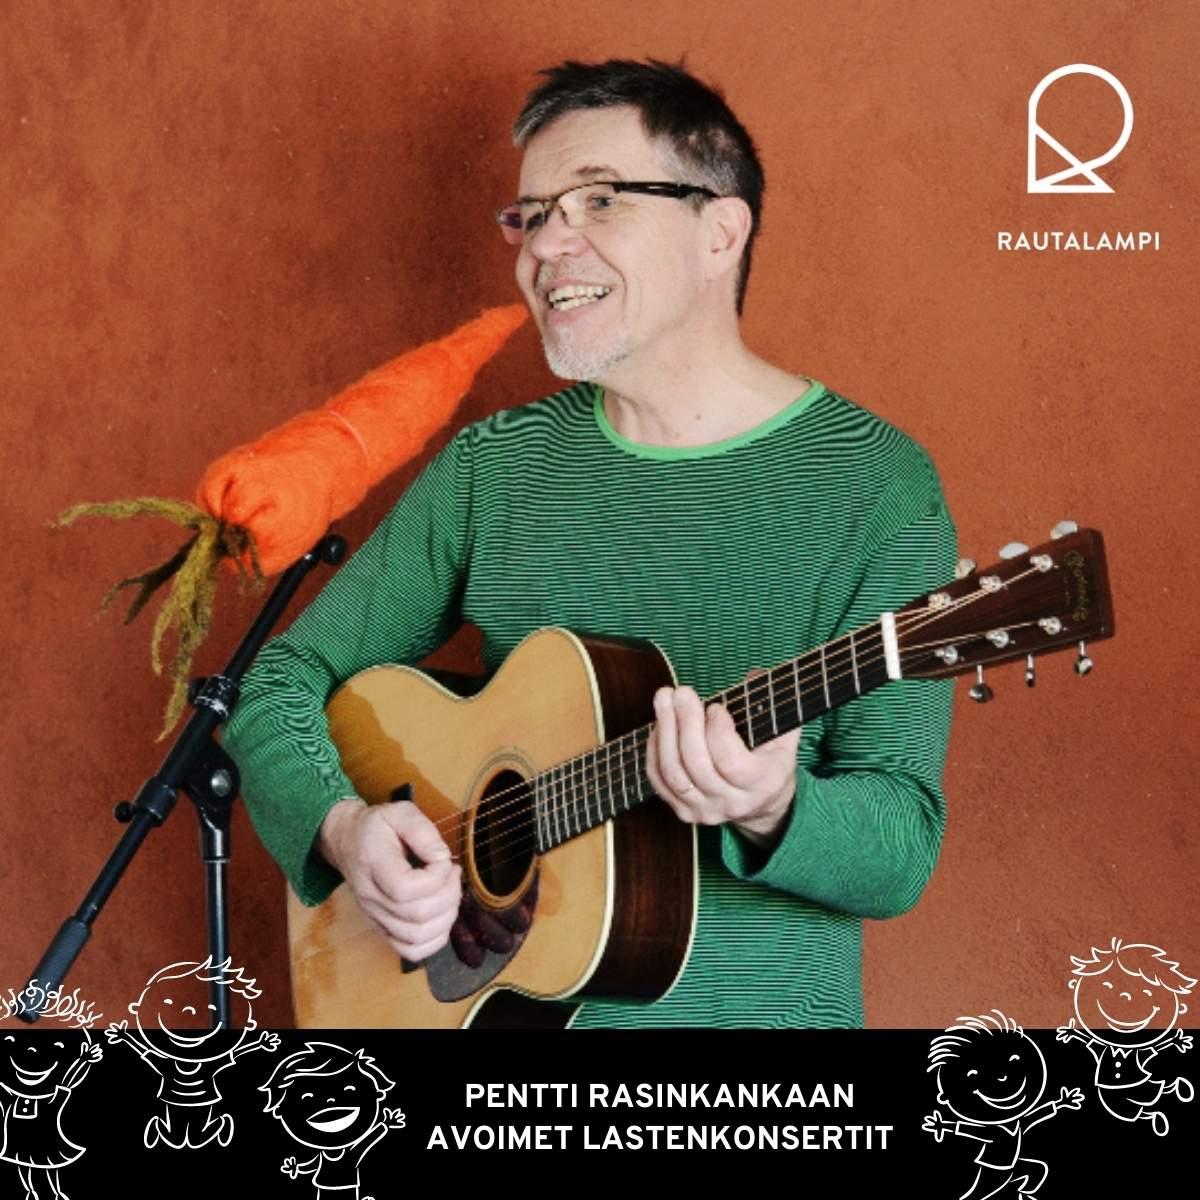 Pentti Rasinkangas konsertti Rautalammilla, muusikko kitara kädessä laulamassa